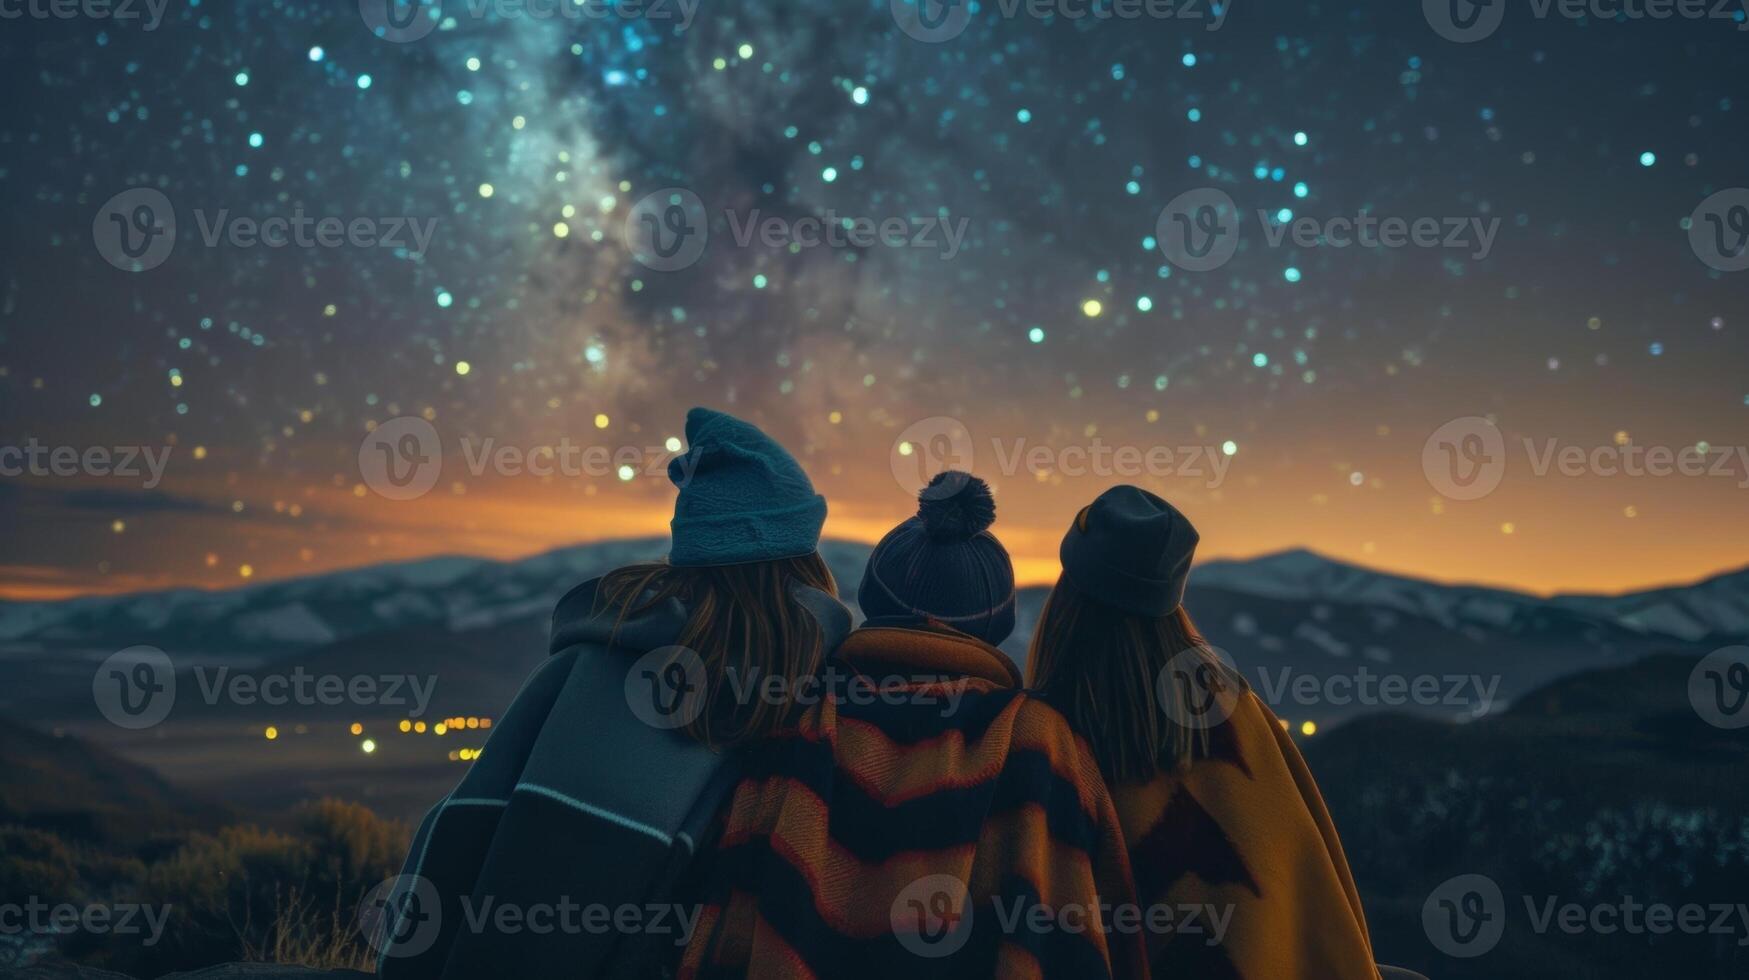 vrienden kruipen samen verpakt in warm dekens net zo ze wonder Bij de schoonheid van de sterrenbeelden bovenstaand foto